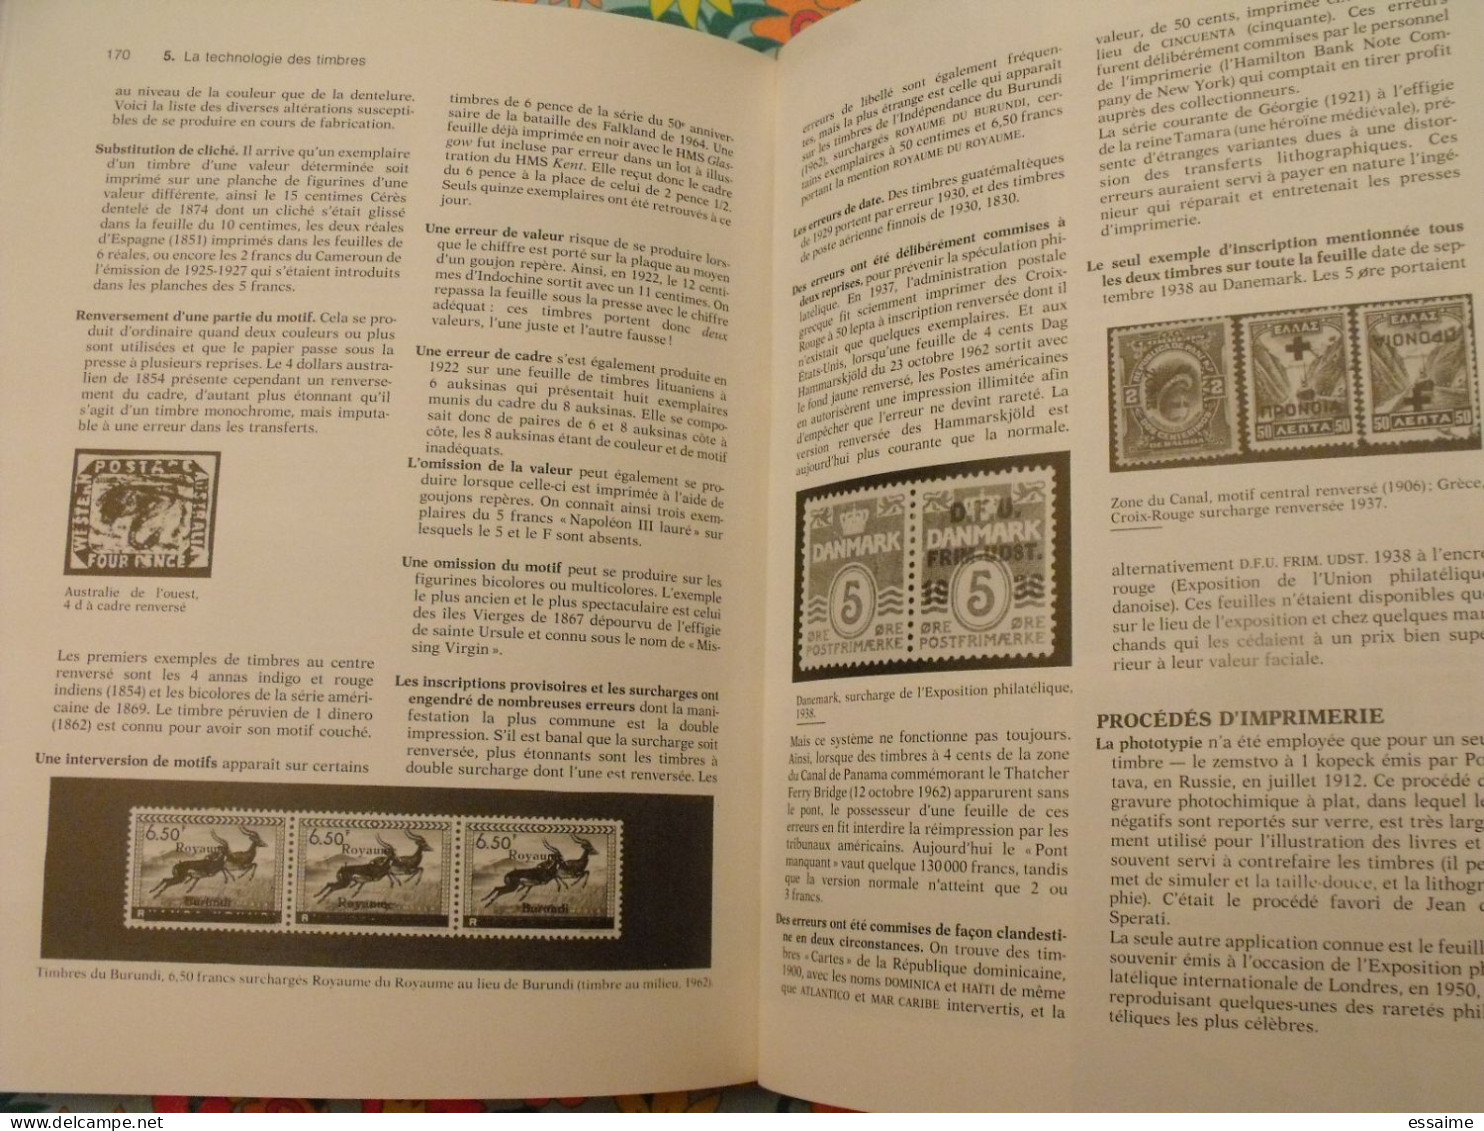 le livre guinness des timbres; édition n° 1. marcel Hunzinger. 1983. intéressant, bien illustré